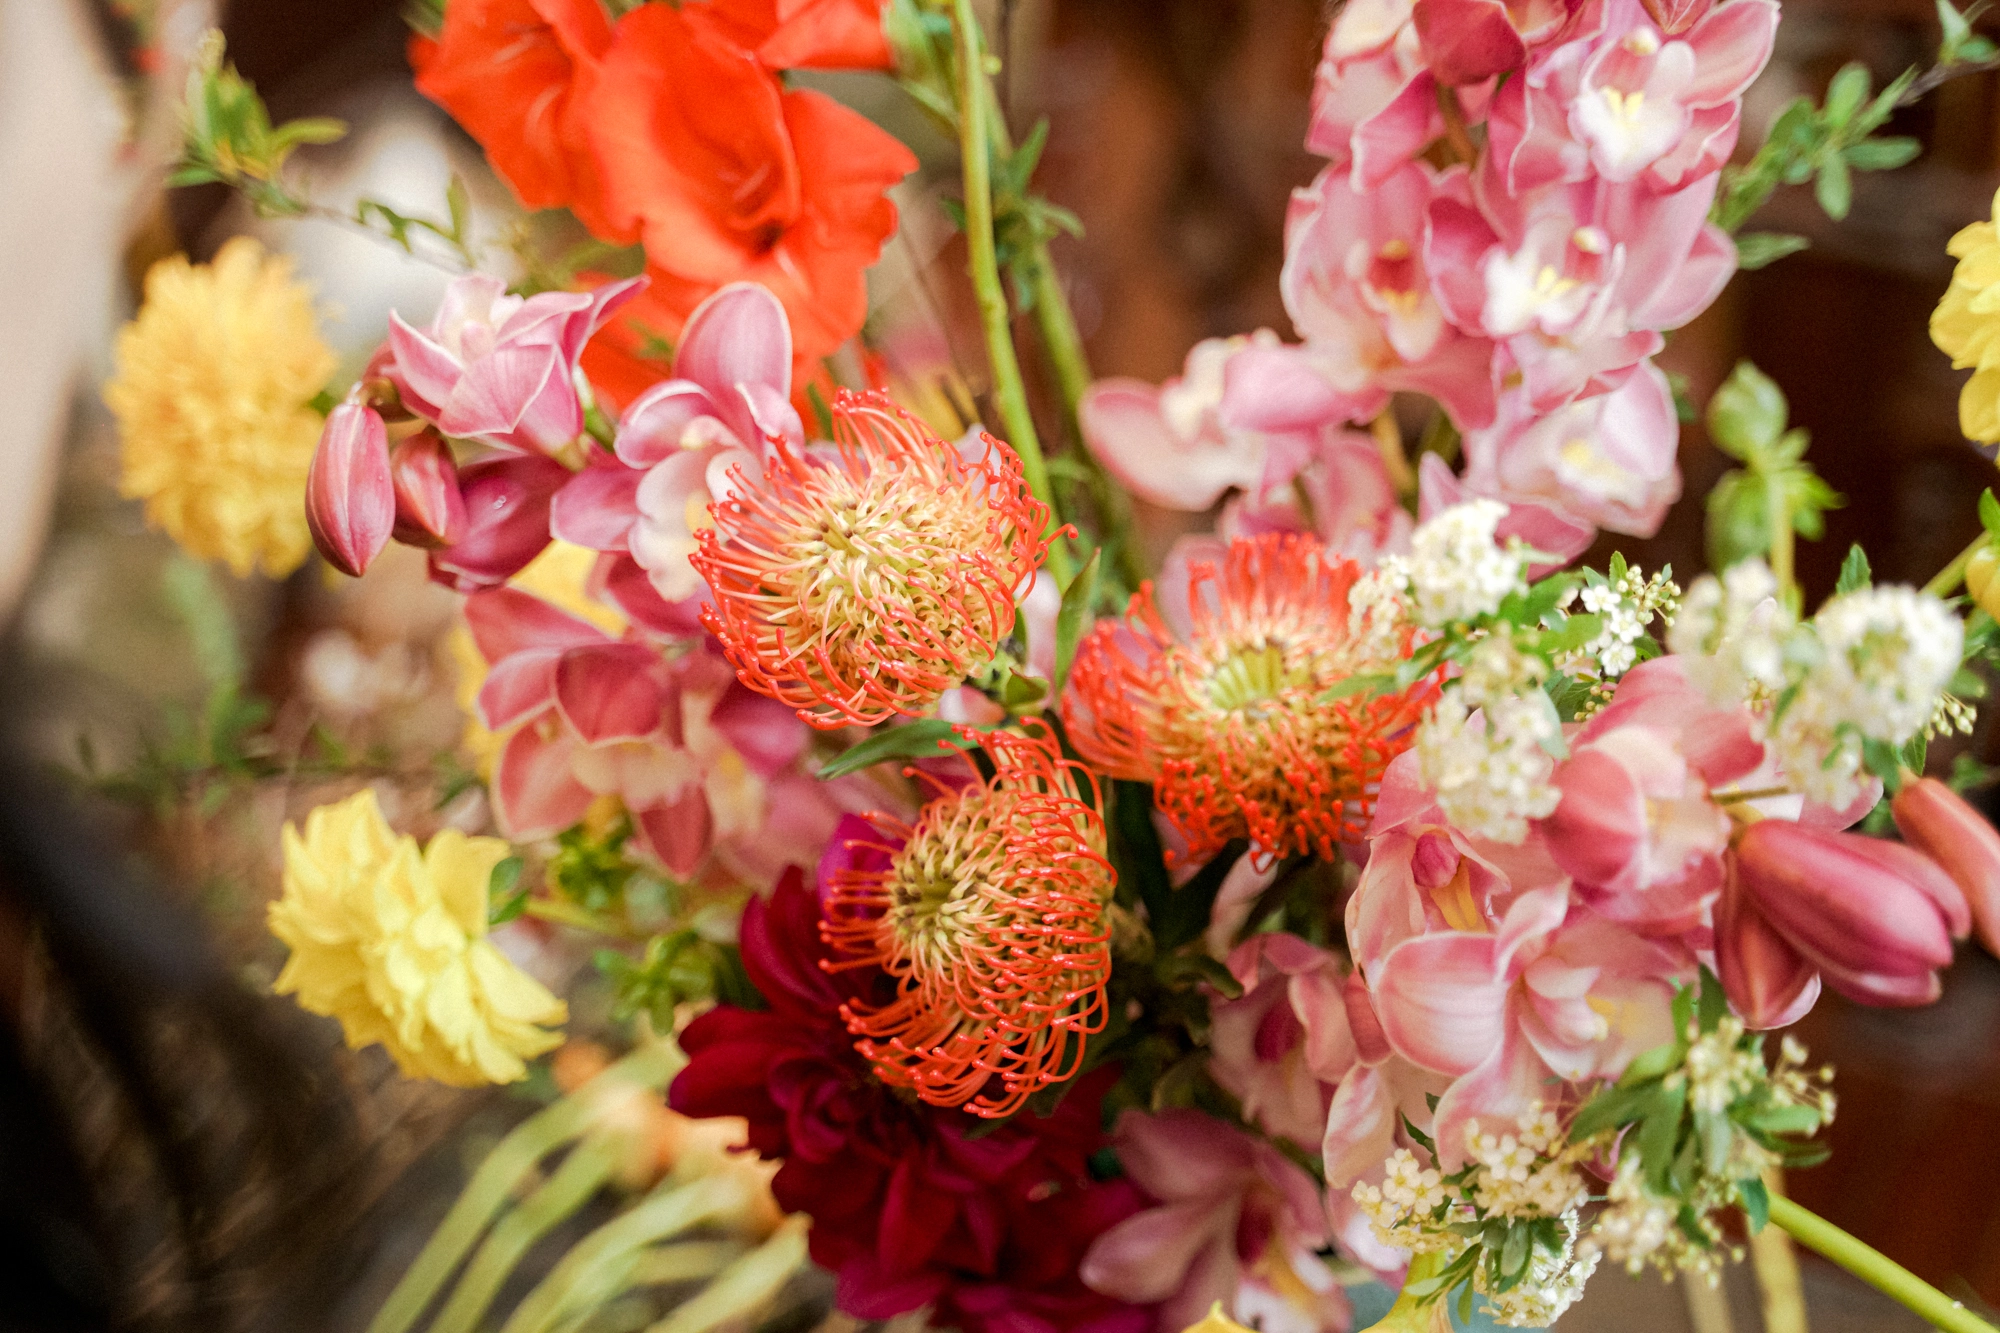 Hội chị em thích các loại hoa mới lạ thì cùng thử cách cắm bình hoa Tết này, đảm bảo ai cũng khen - Ảnh 6.